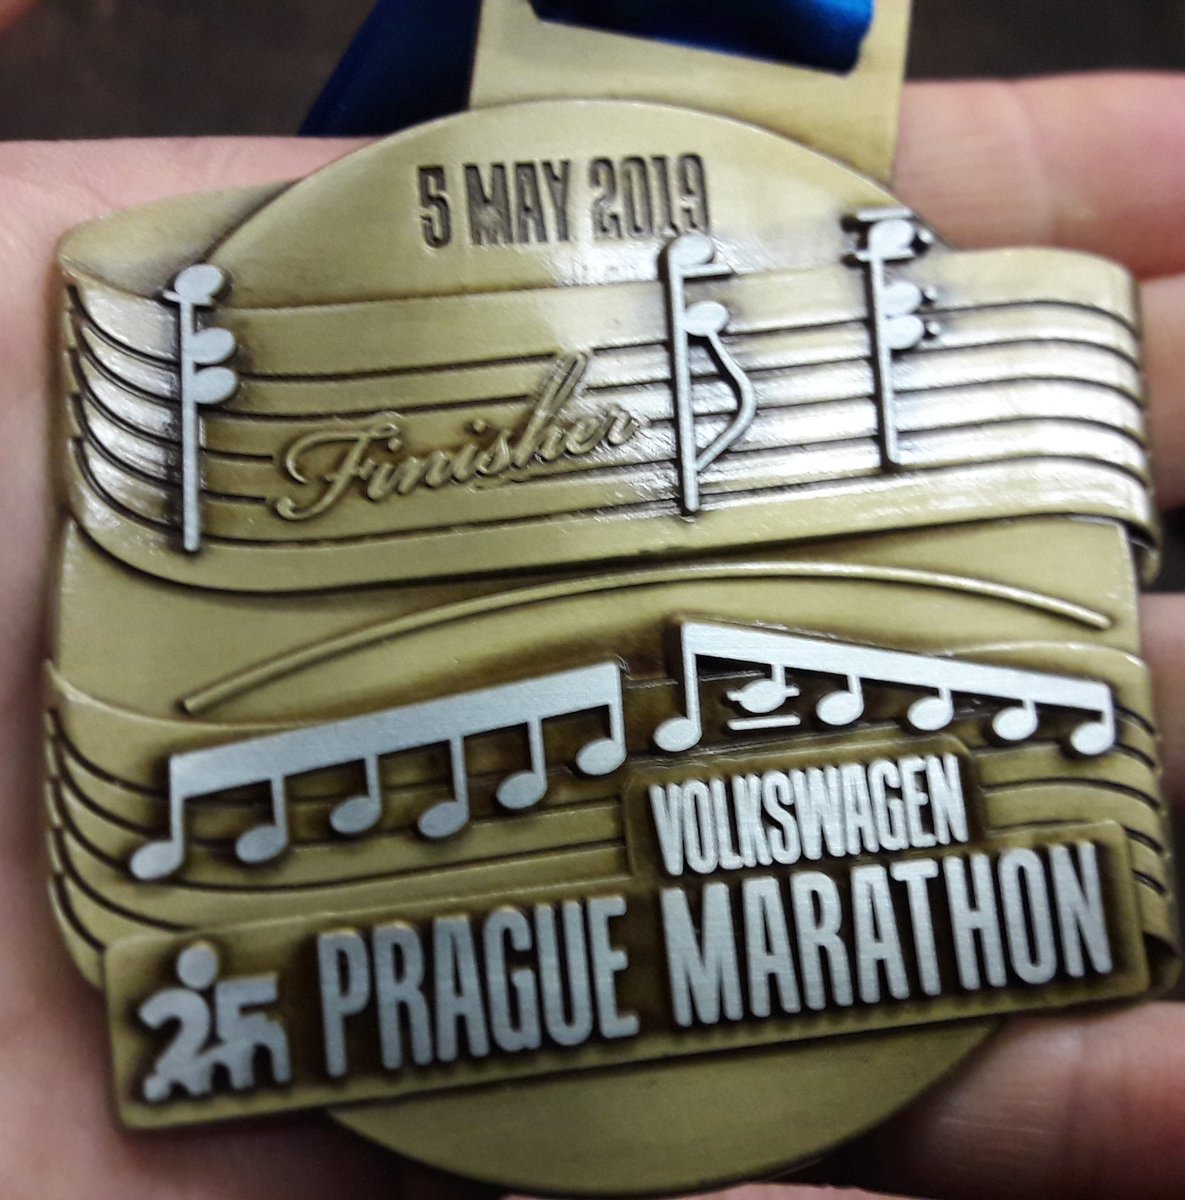 Het is gelukt! De marathon van Praag uitgelopen (in een PR) en #weereenmooiemedaillevoordeverzameling #PragueMarathon #allrunnersarebeautiful @RunCzech